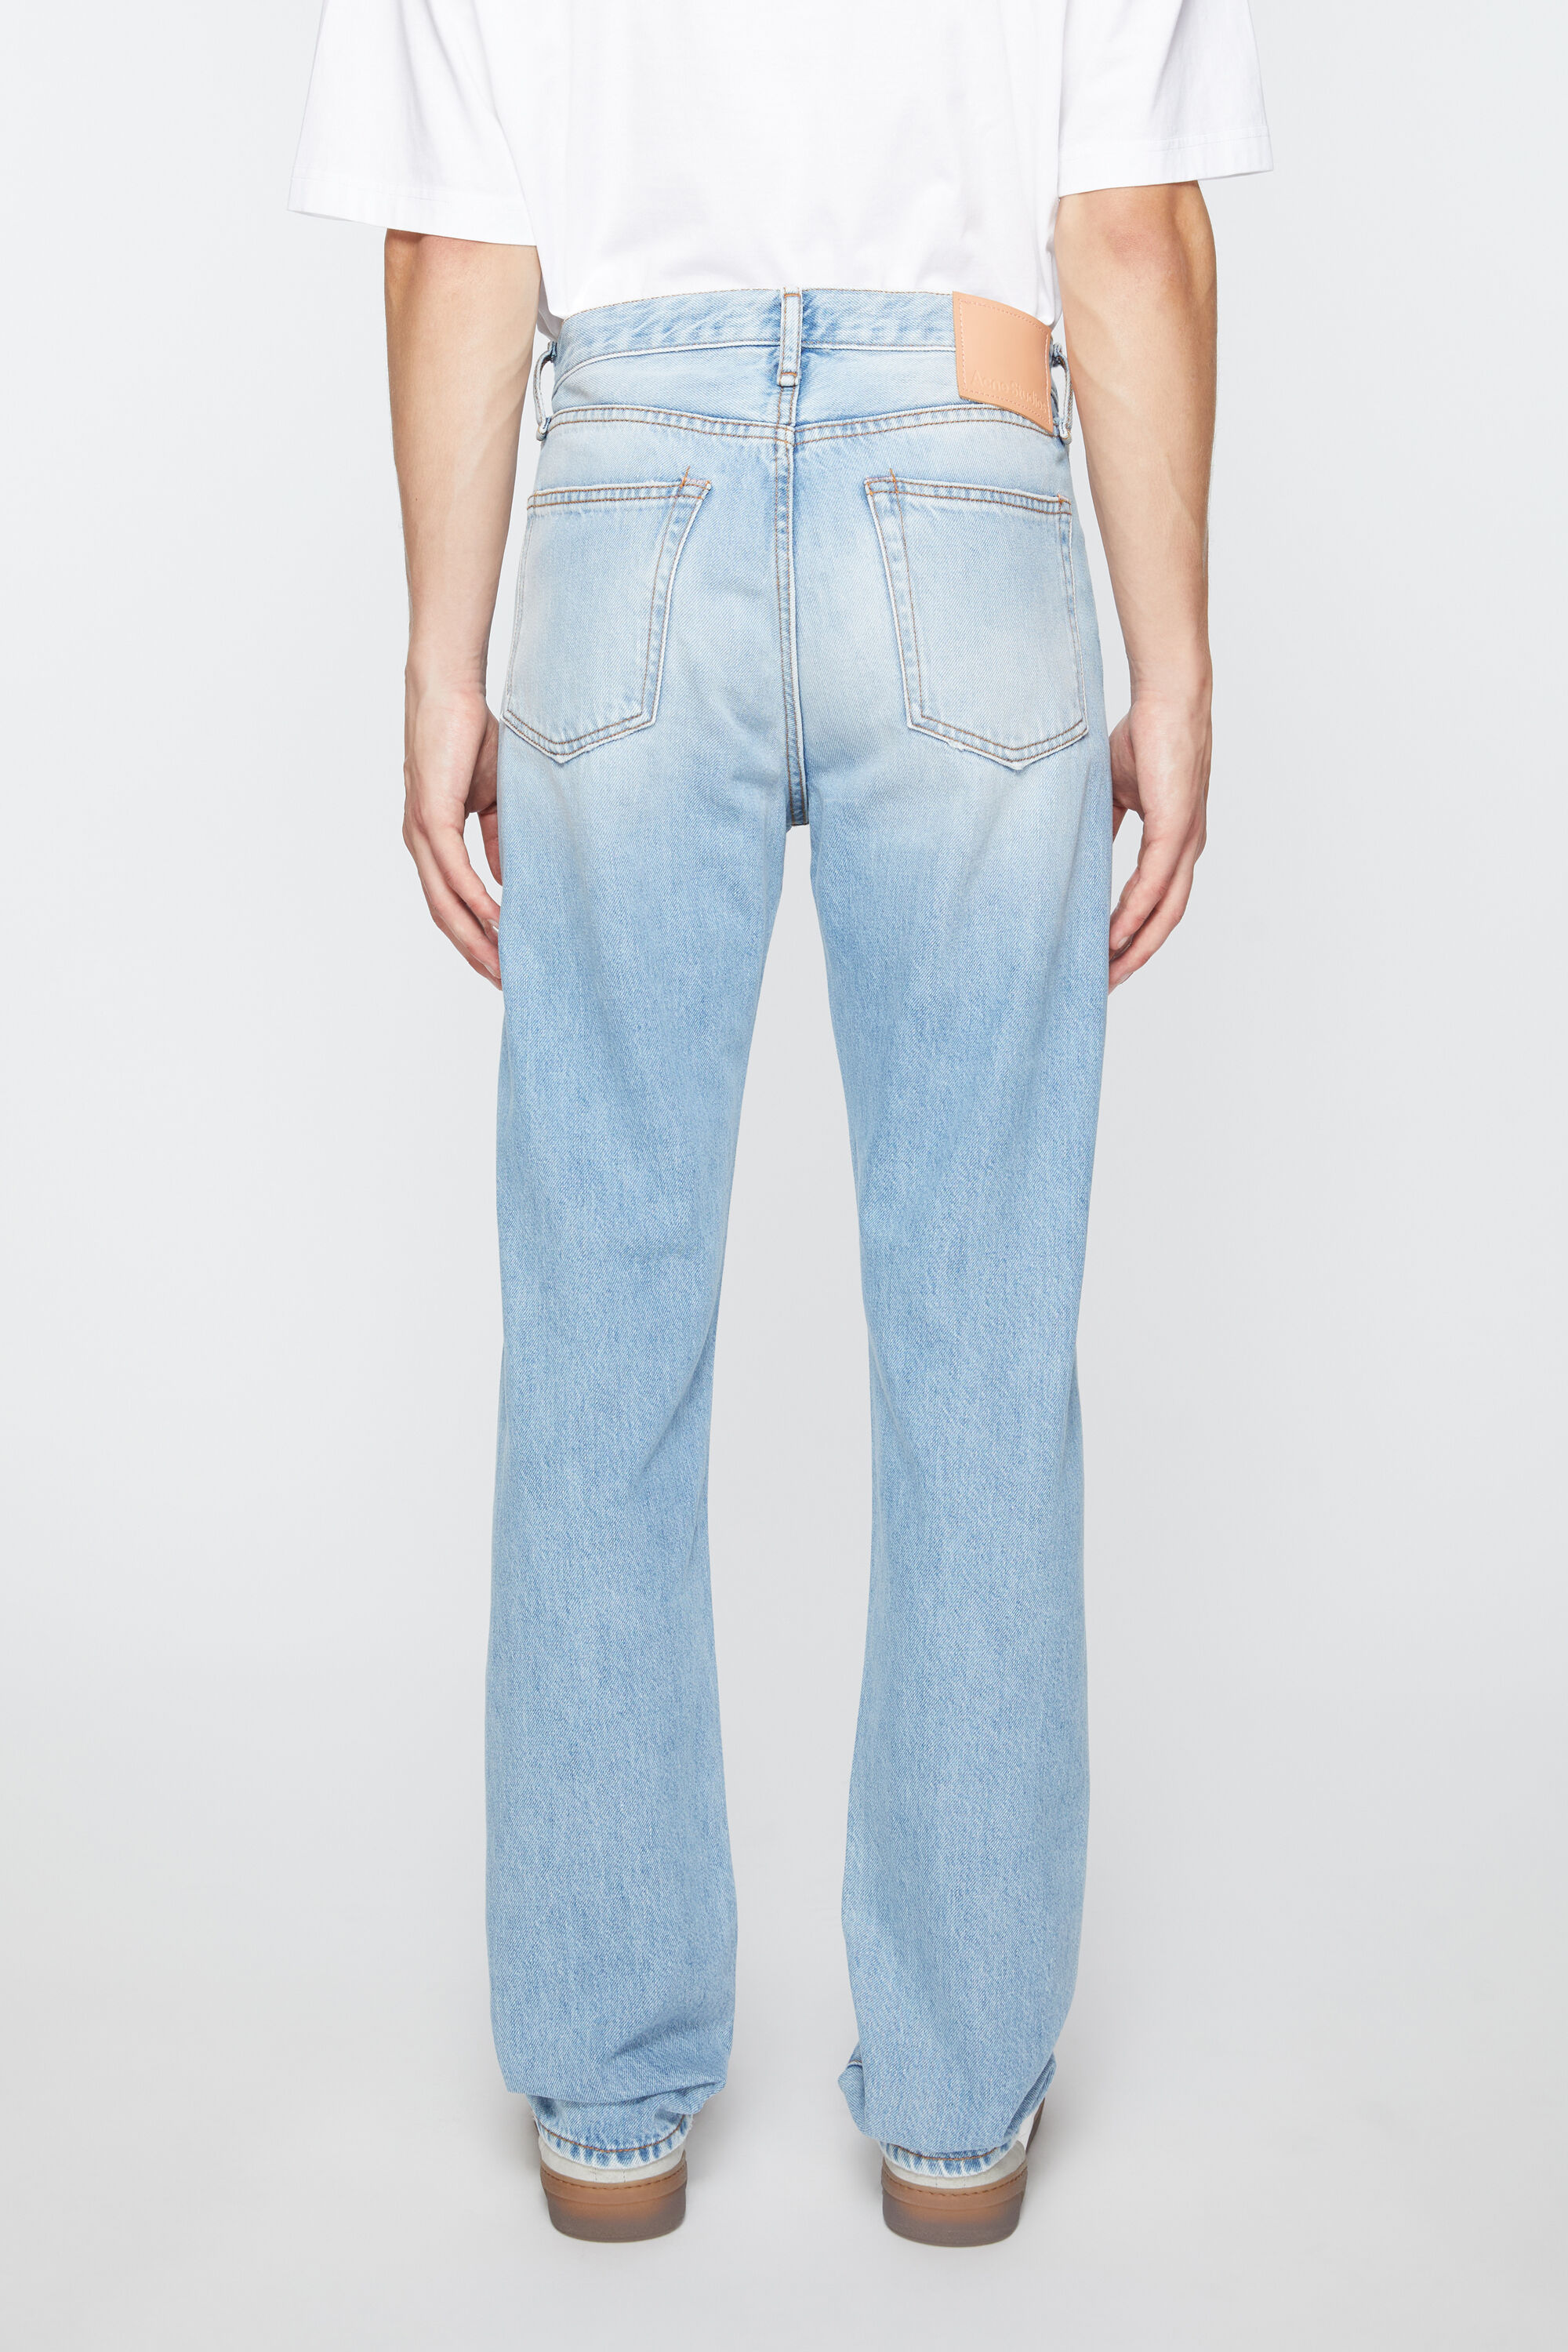 Regular fit jeans -1996